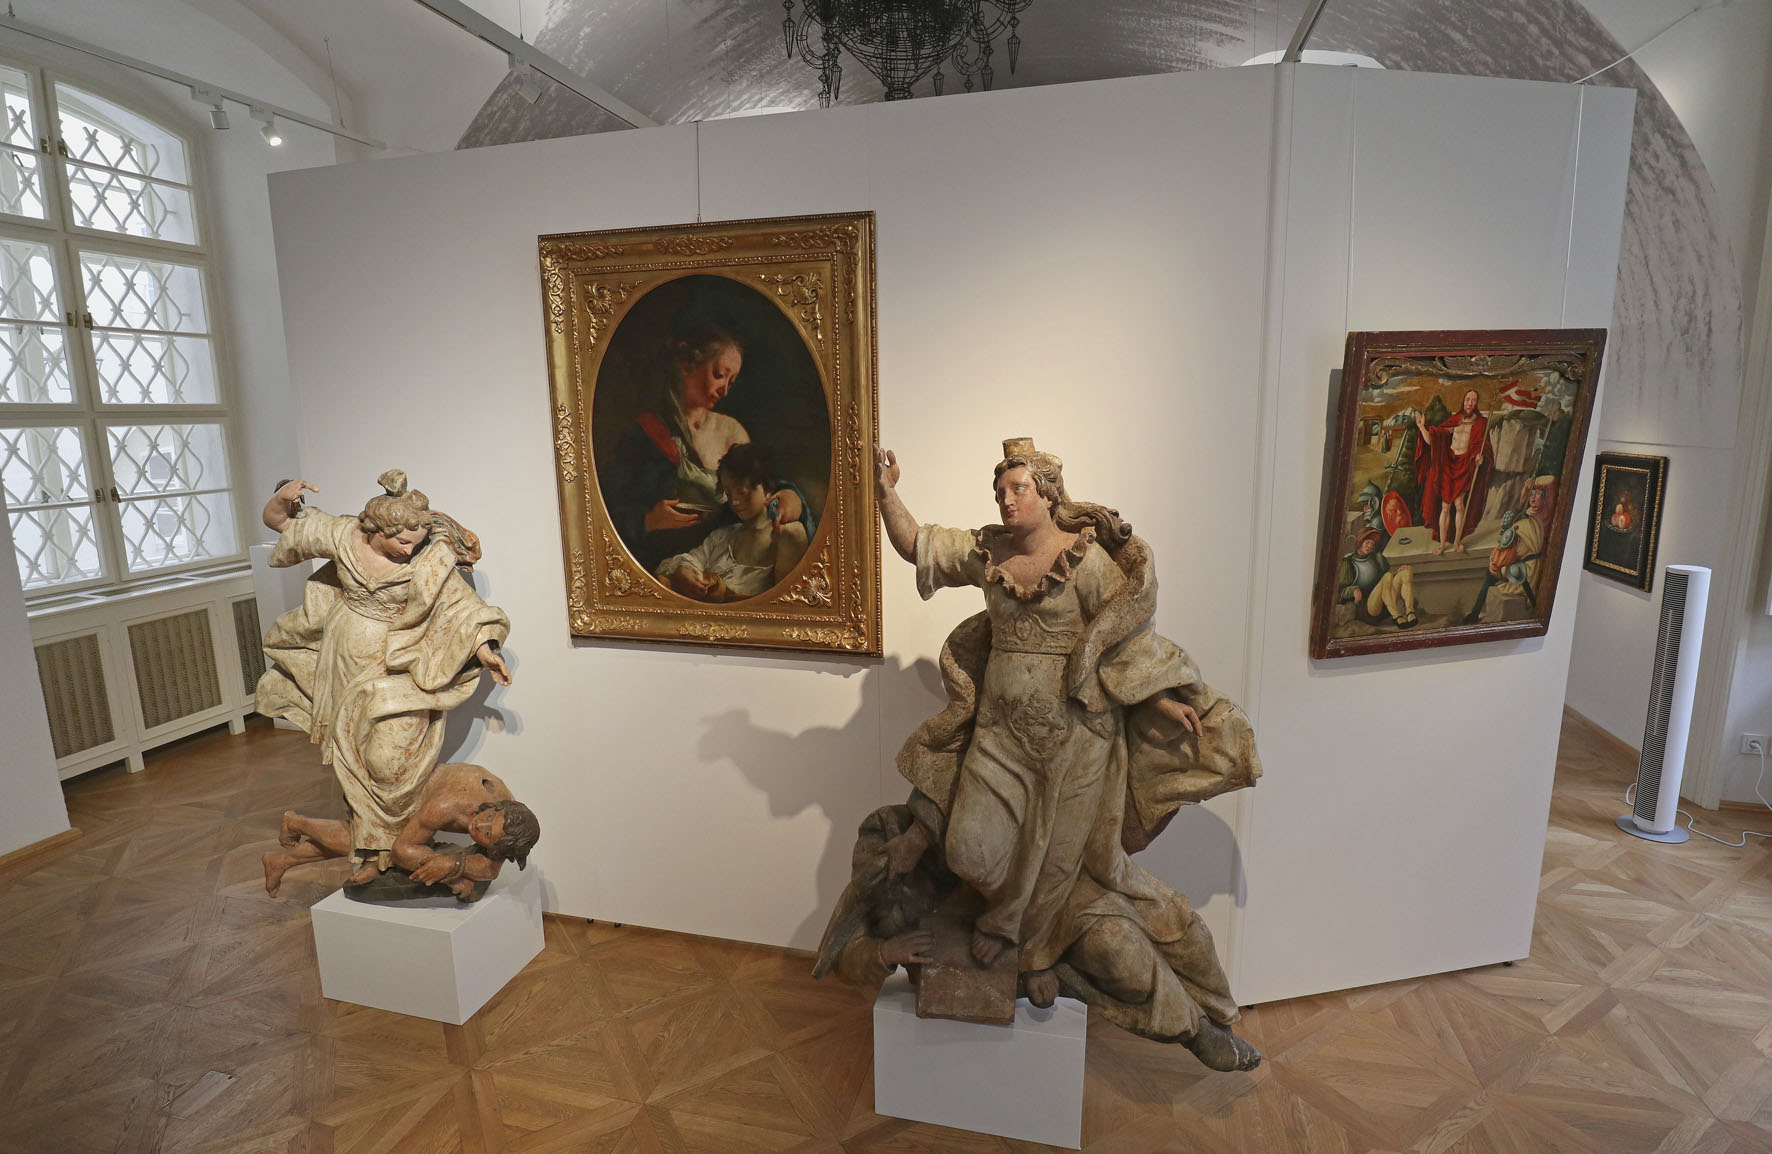 Pohled do instalace předaukční výstavy: Tiepolův obraz s dvojicí soch připsaných Ignáci Platzerovi a malbou Zmrtvýchvstání z Dürerova okruhu (foto: Martin Mádl)